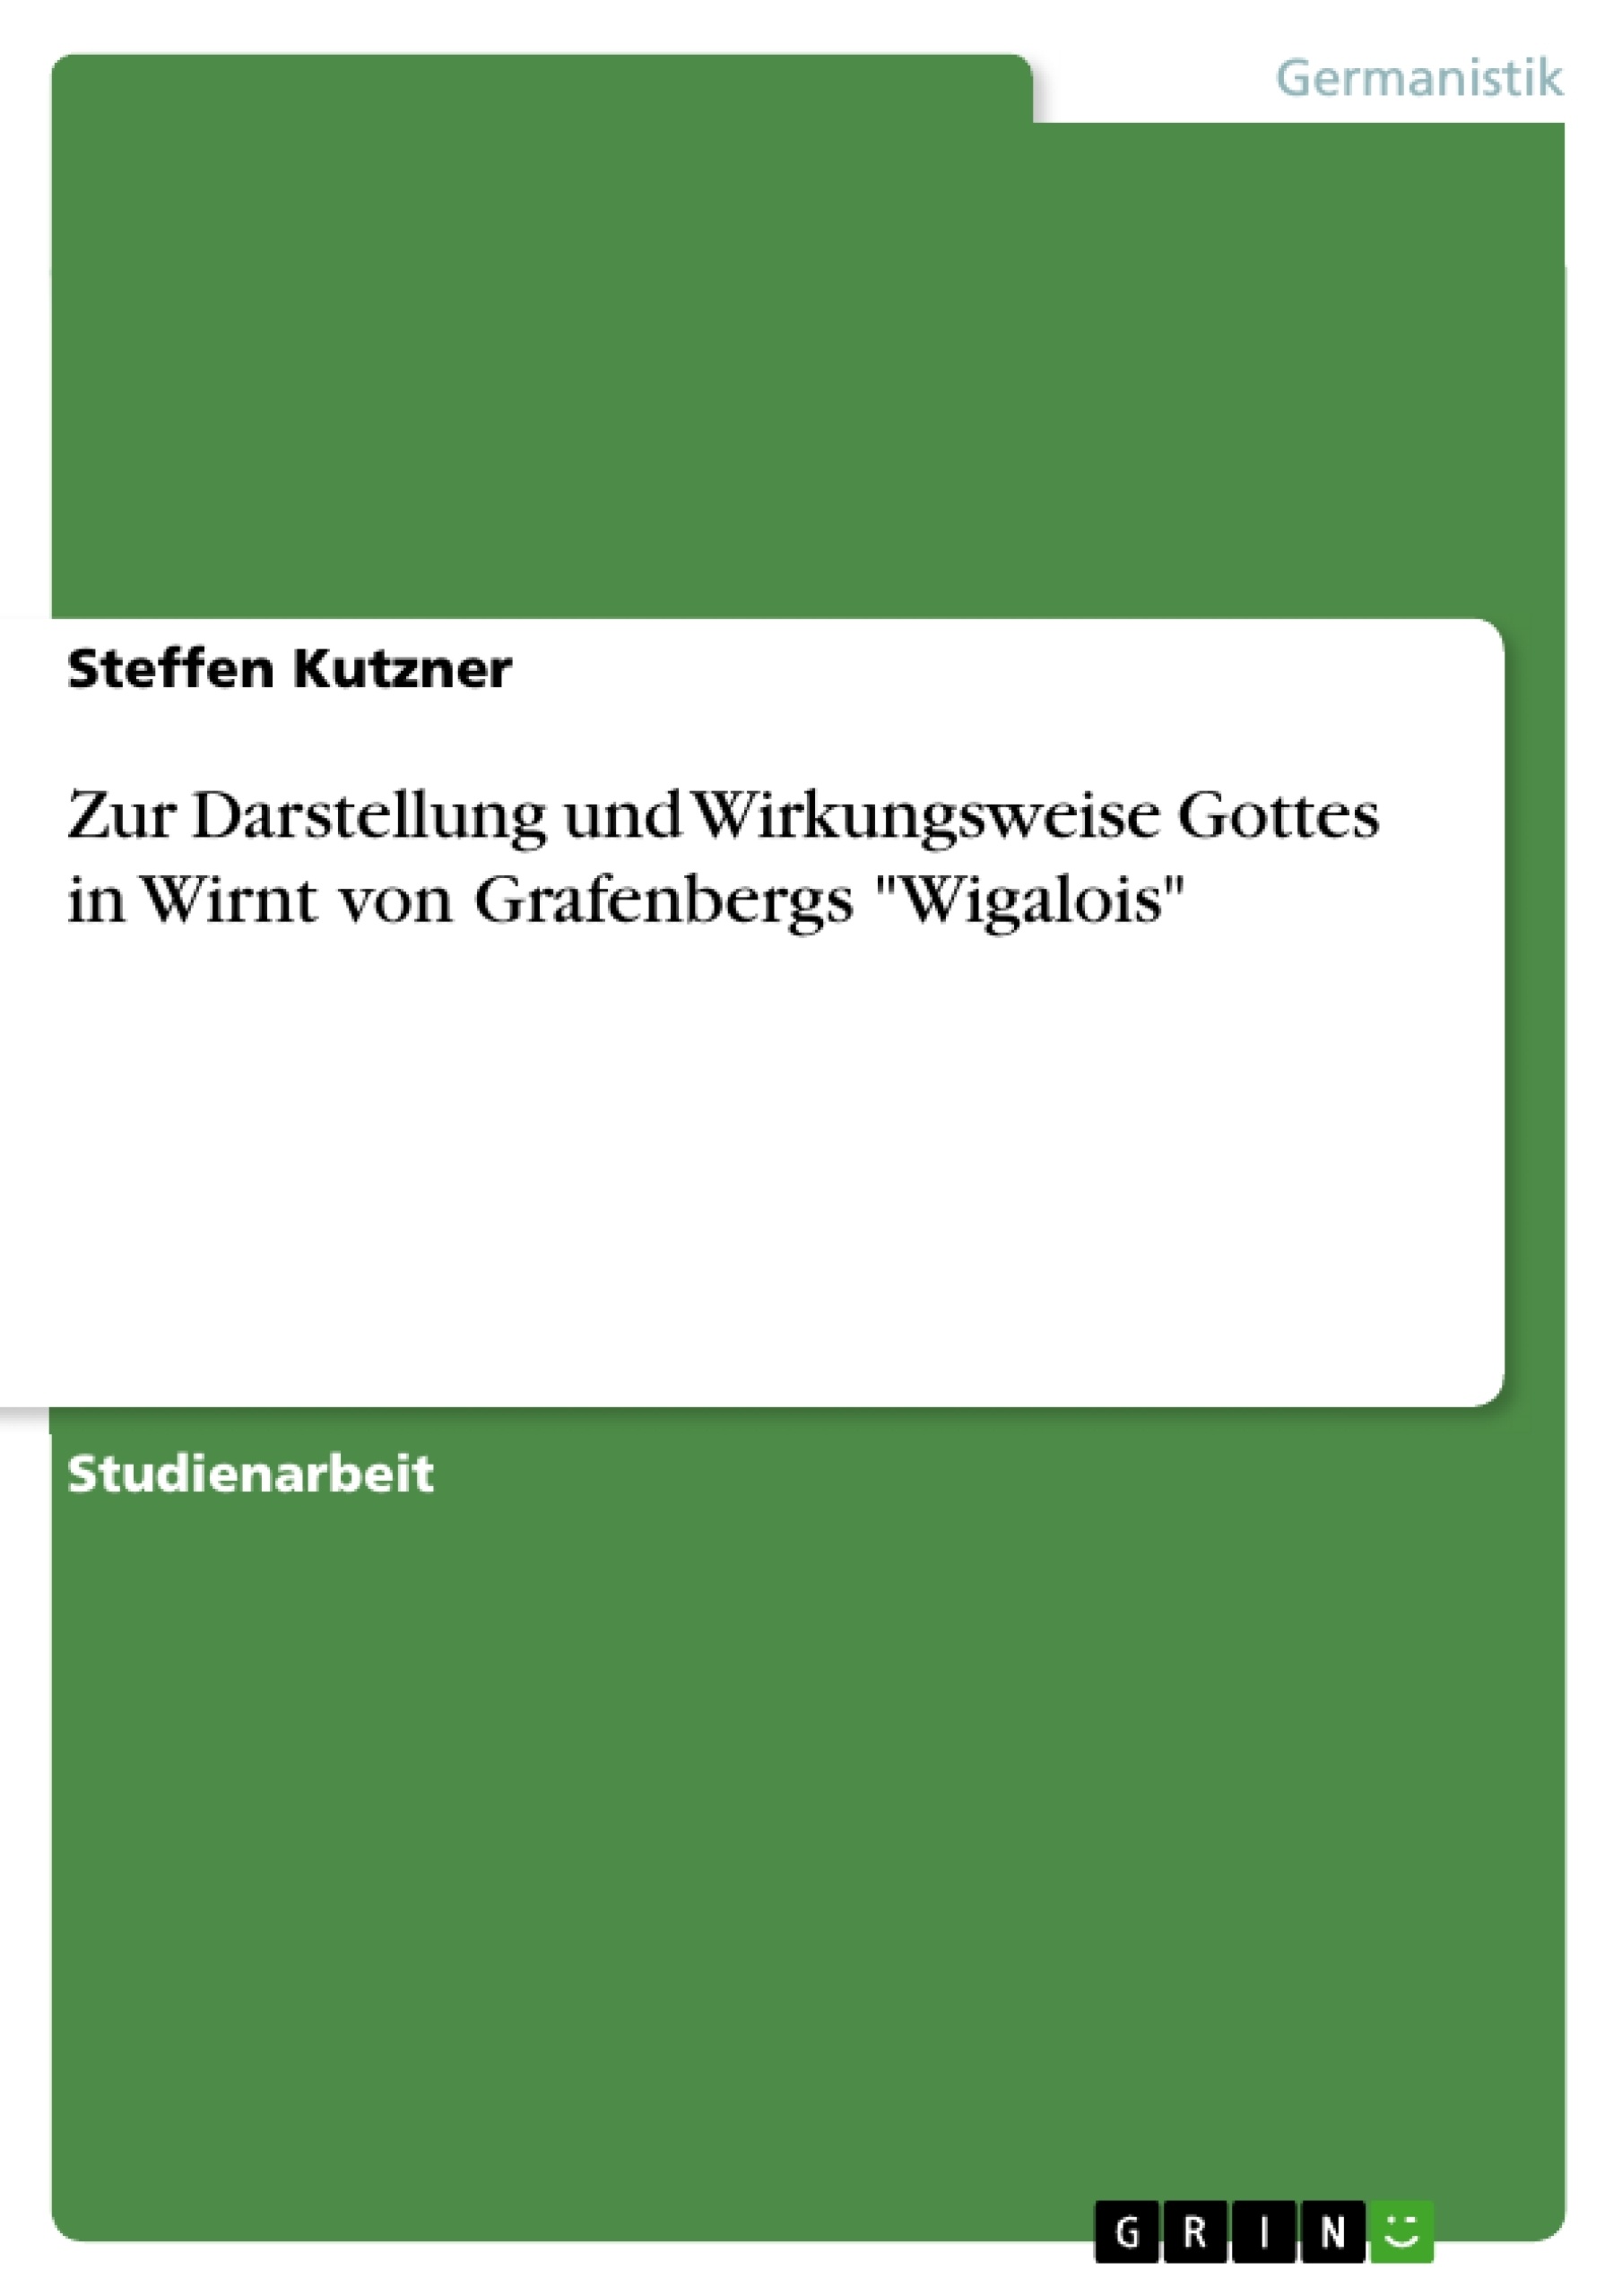 Title: Zur Darstellung und Wirkungsweise Gottes in Wirnt von Grafenbergs "Wigalois"